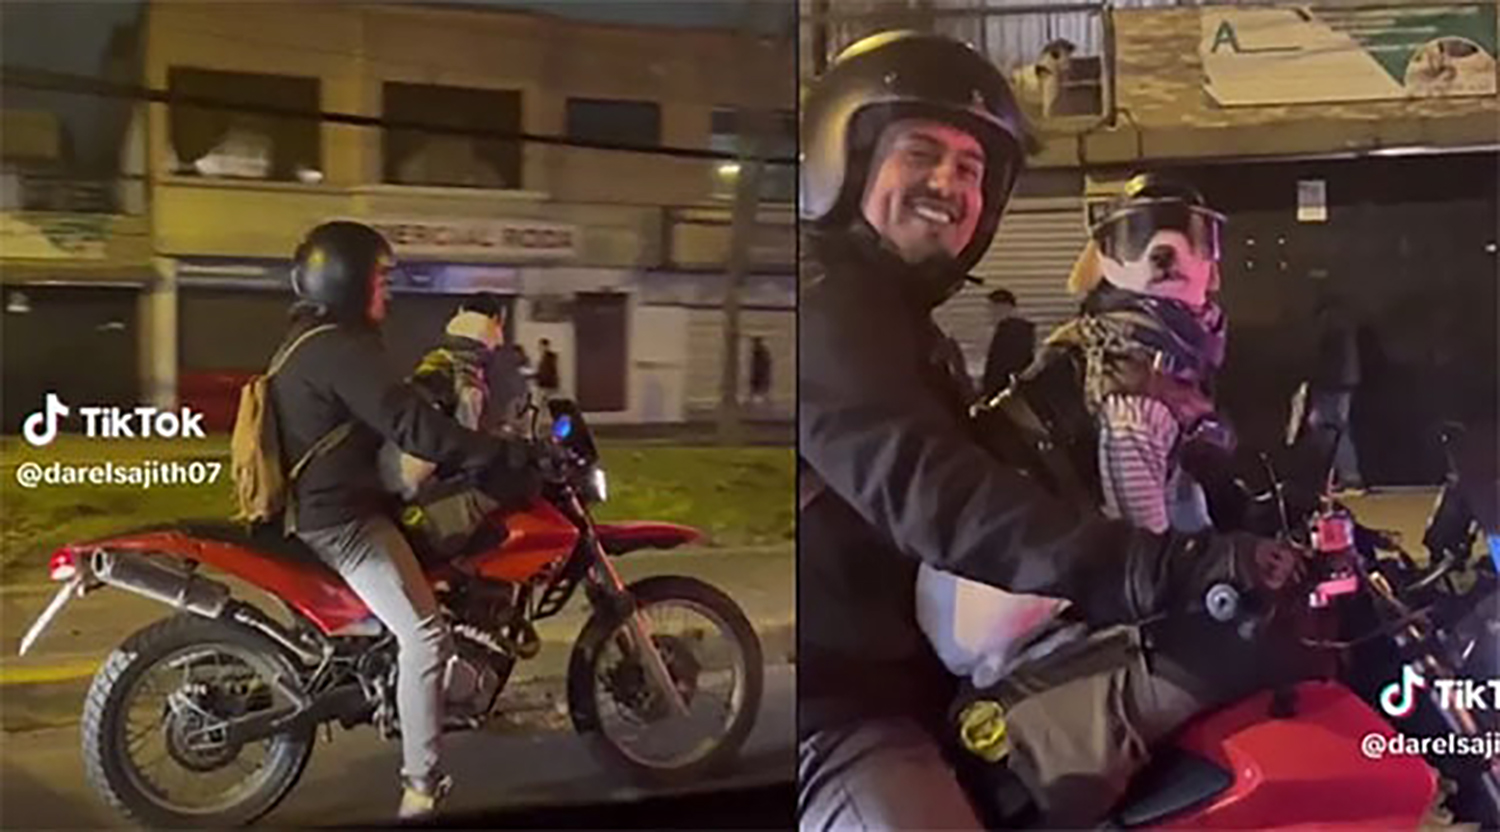 VIDEO: Perro motociclista de TikTok conquista internet